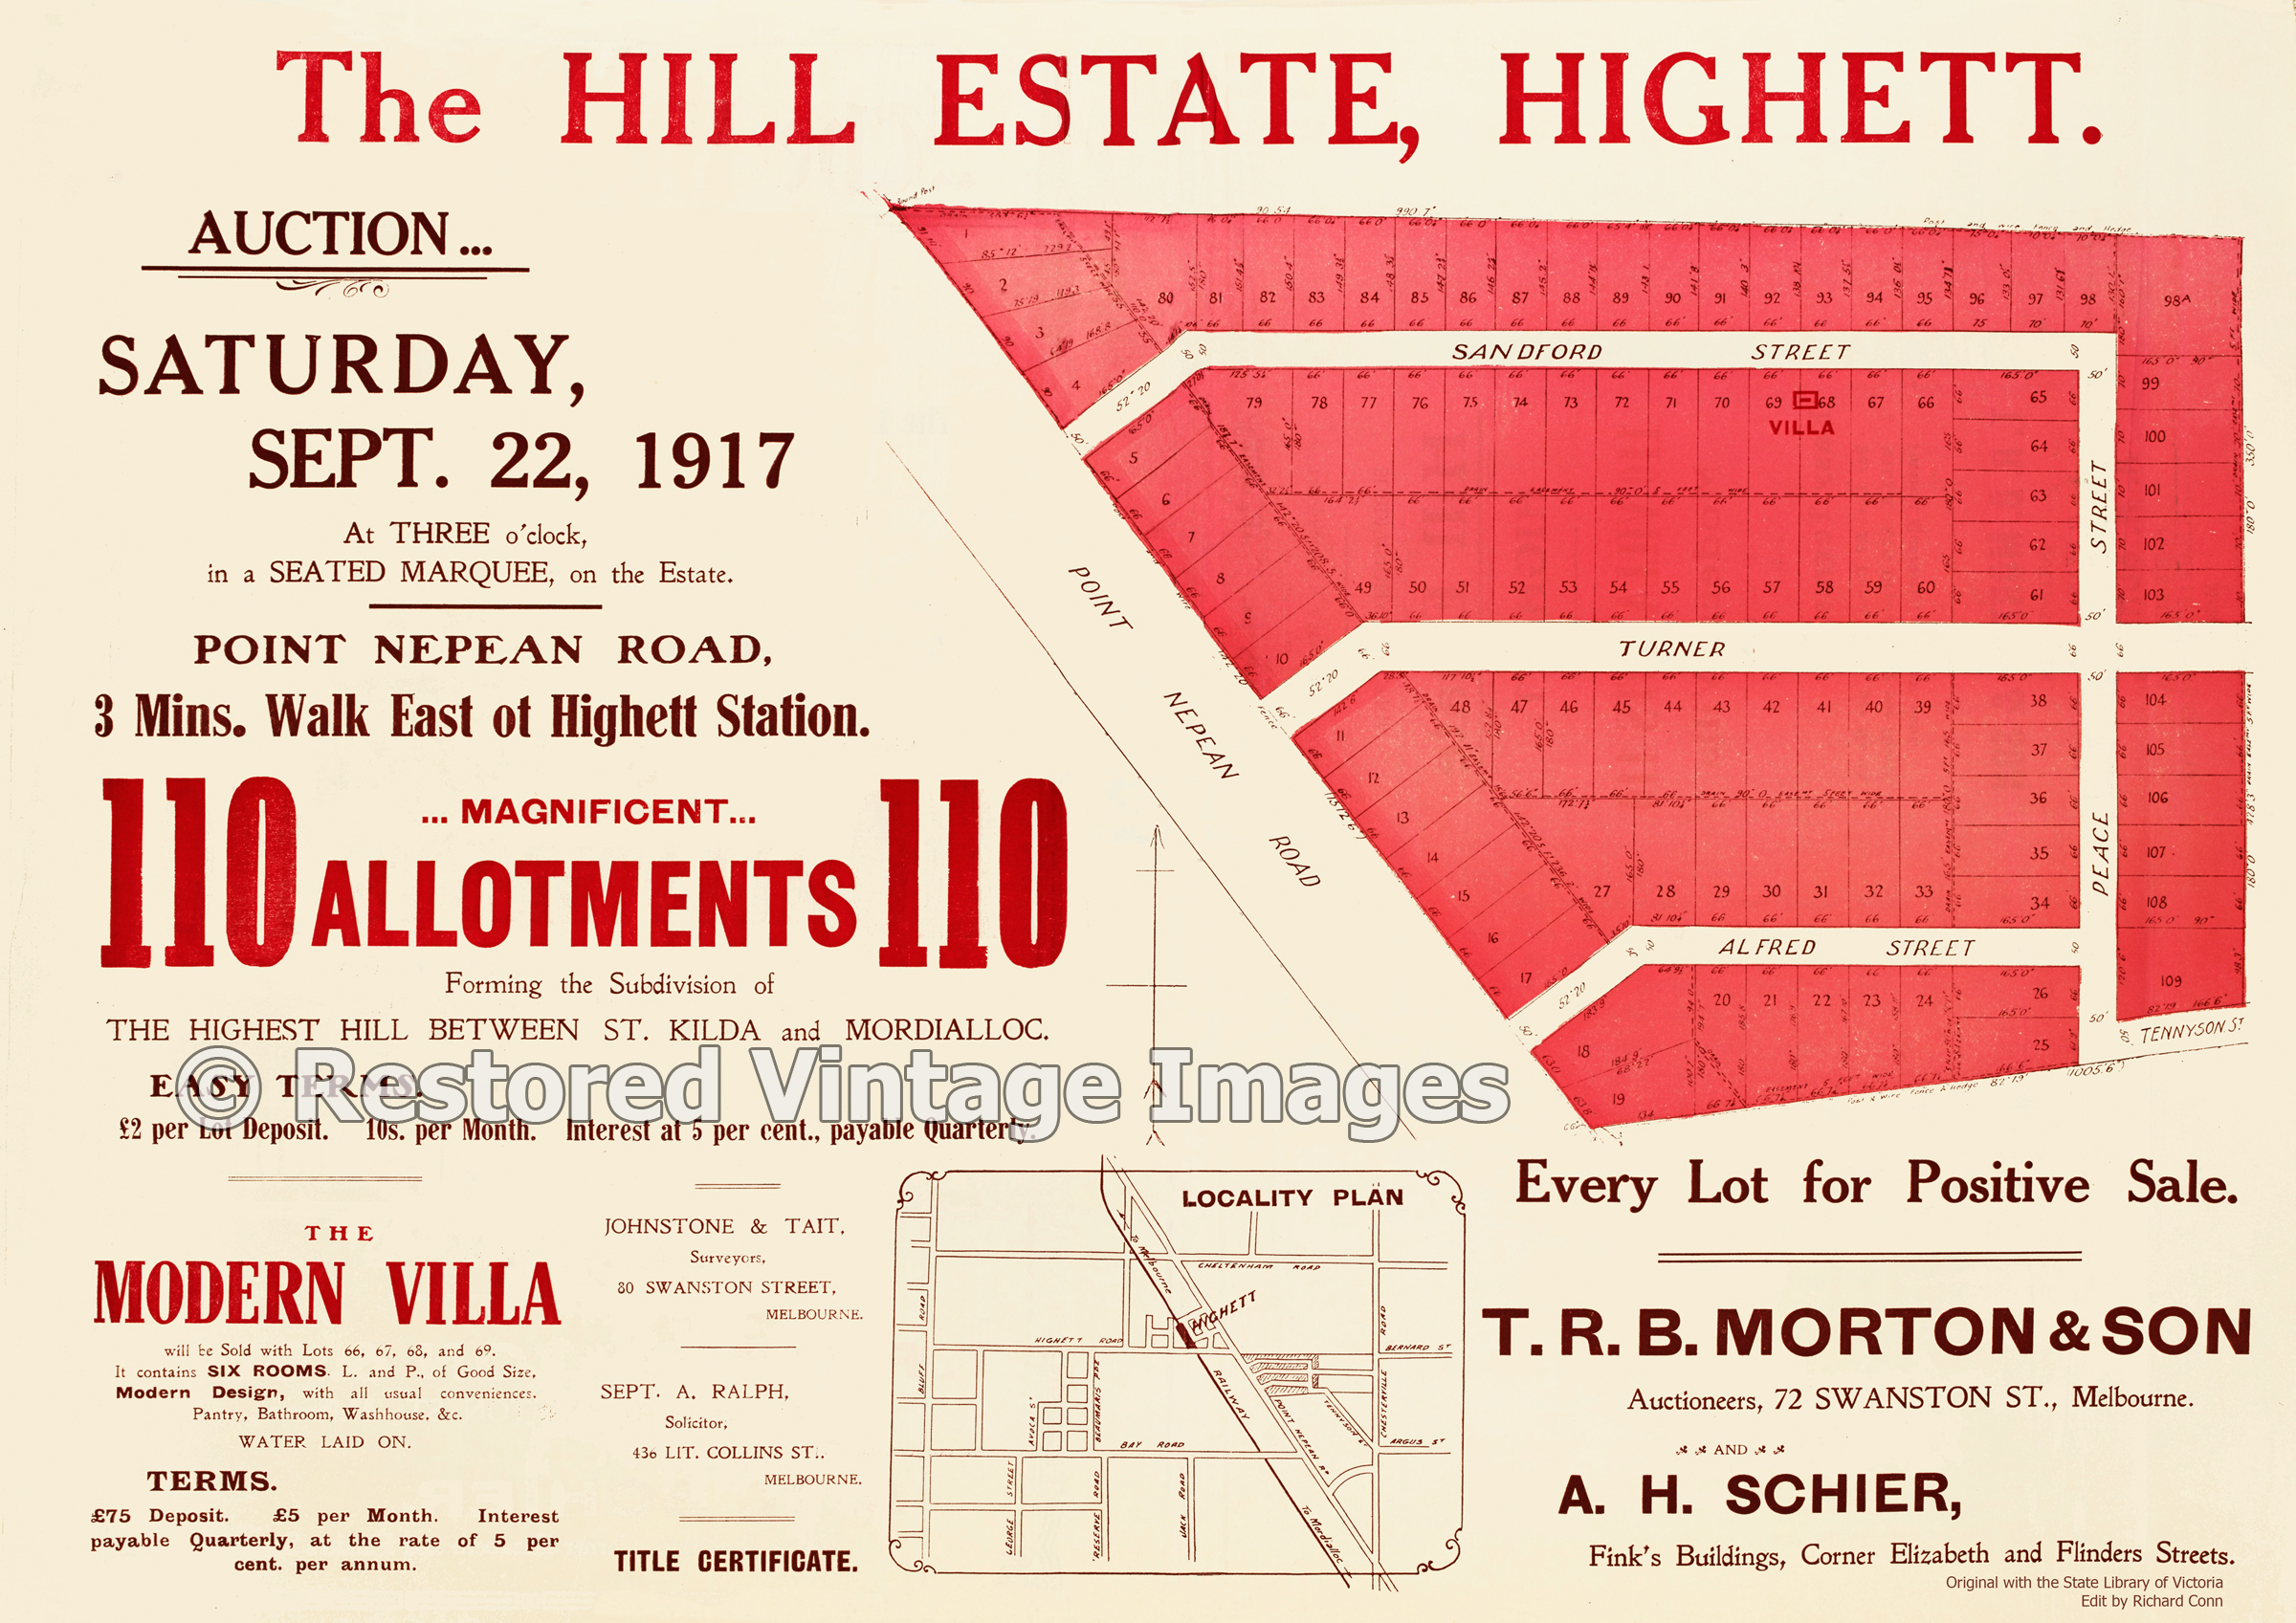 The Hill Estate 1917 – Highett